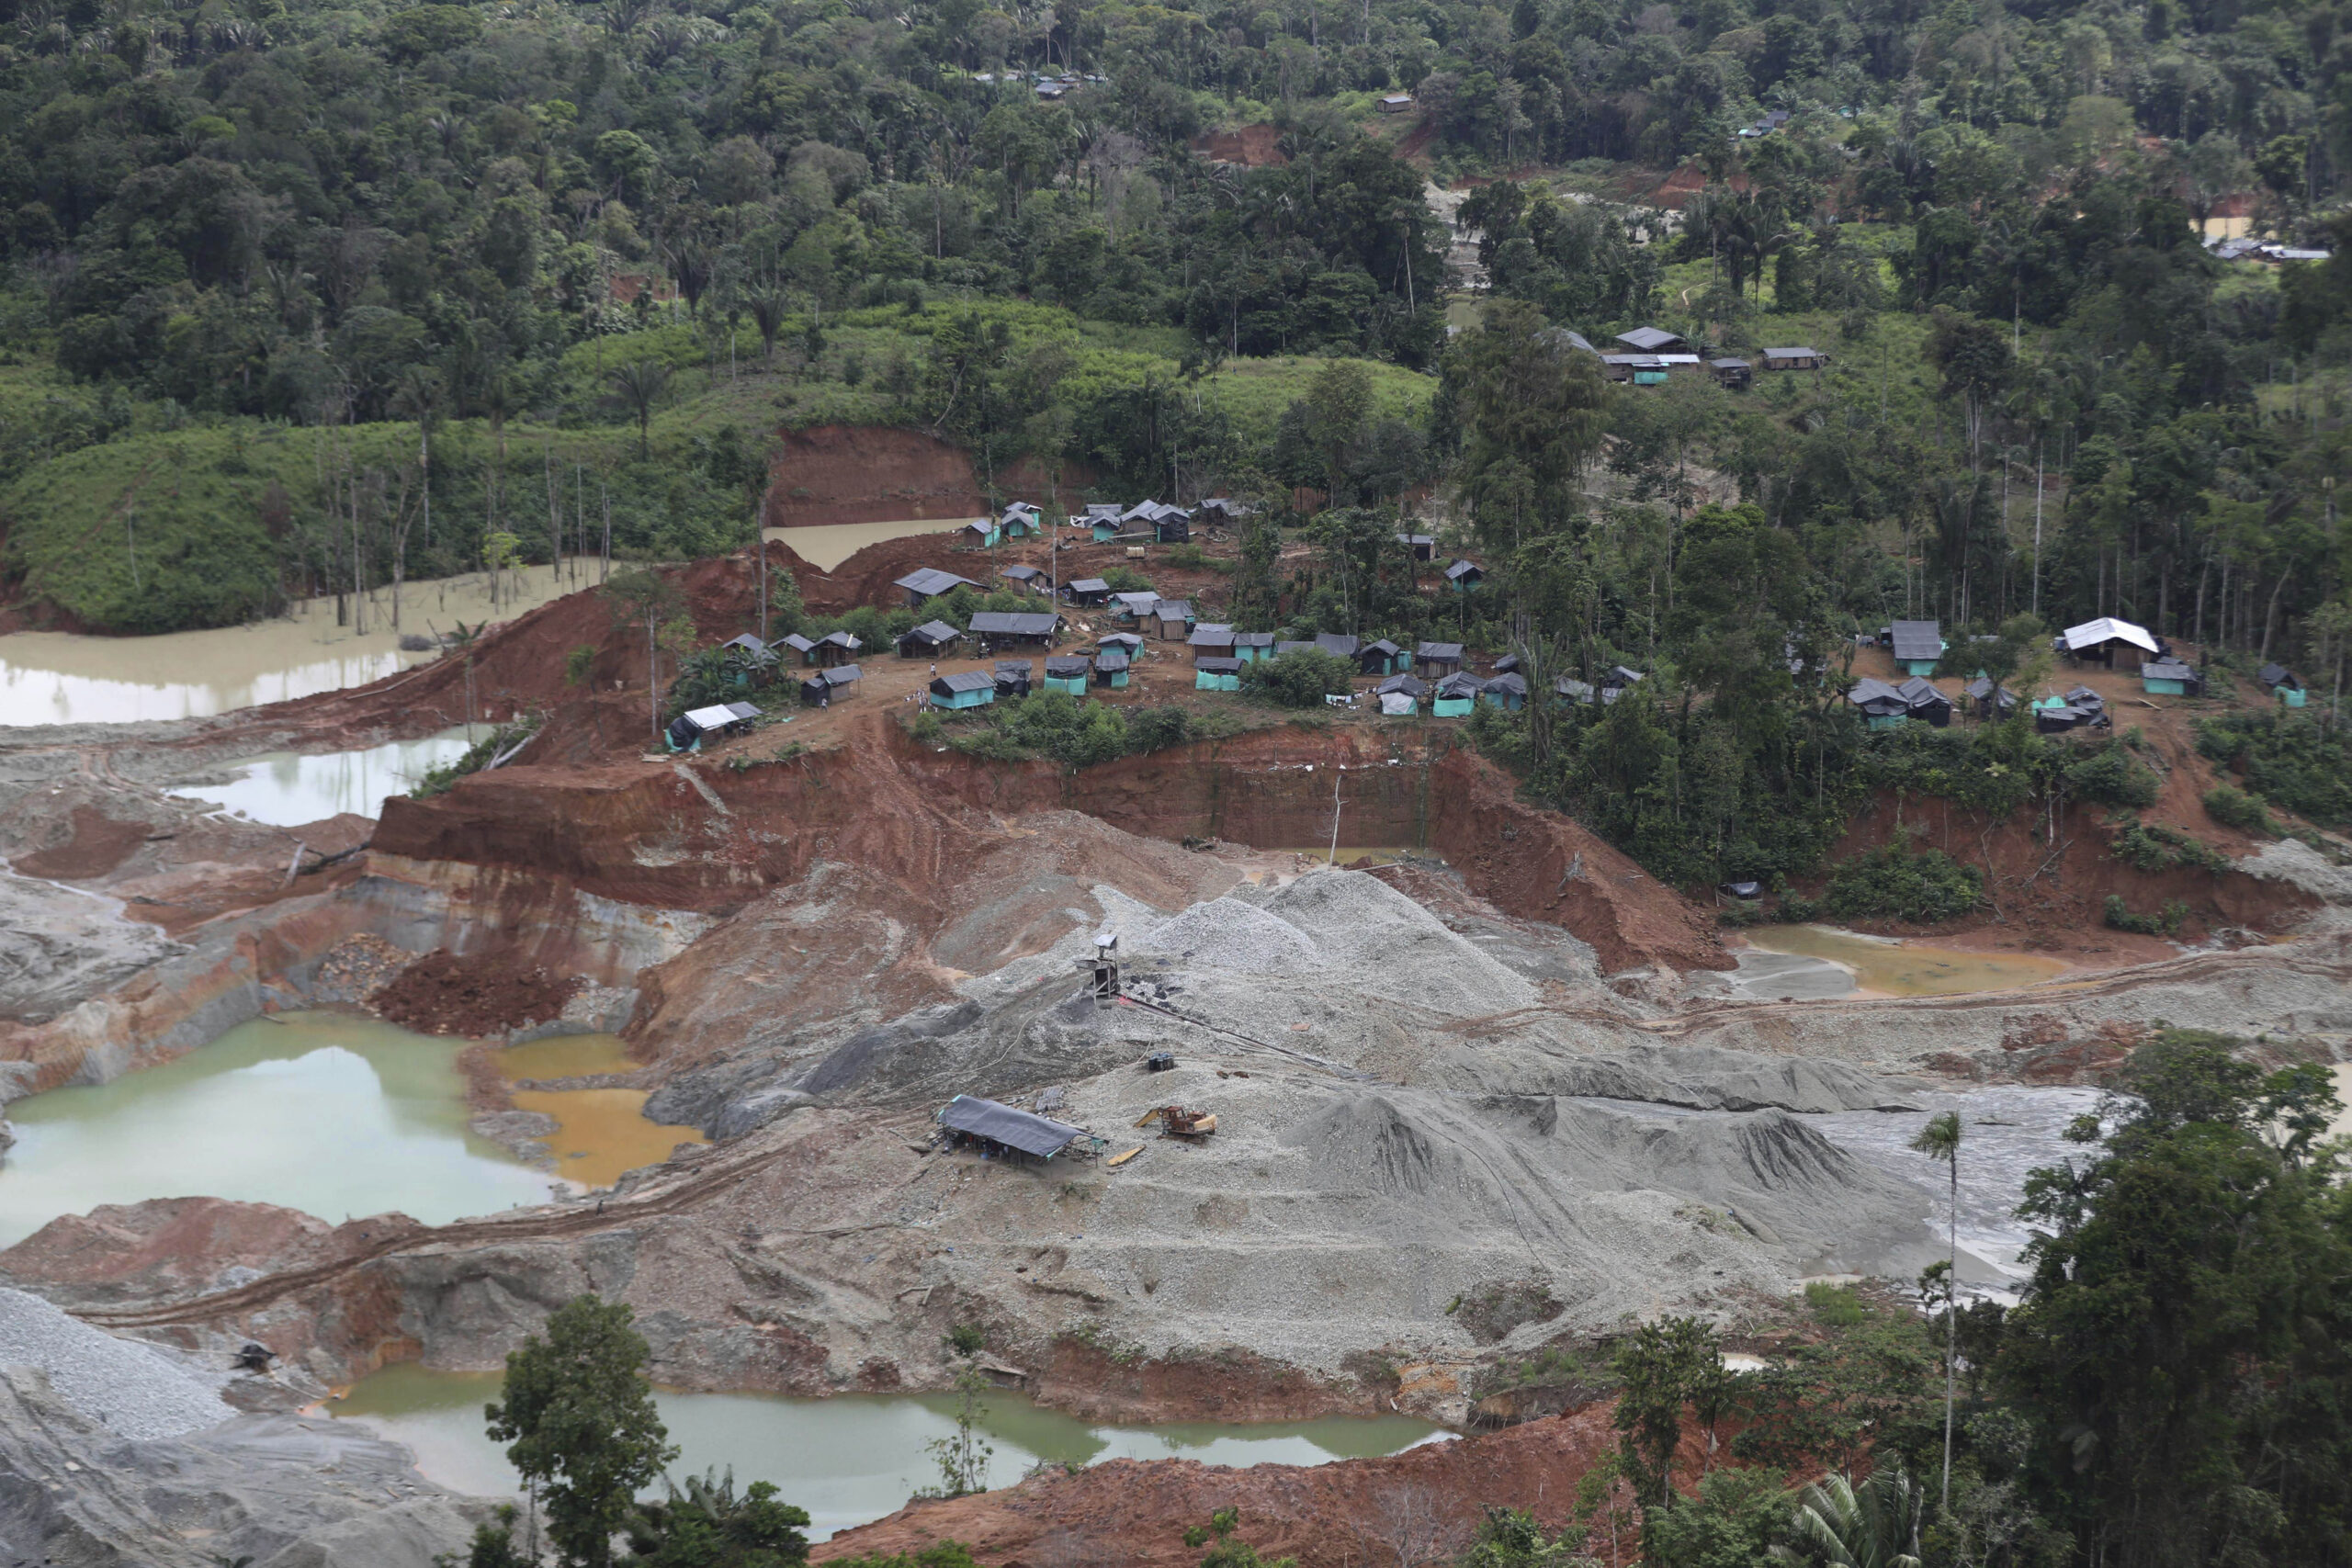 Κινεζική εταιρεία διακόπτει τη δραστηριότητα σε χρυσωρυχείο της στην Κολομβία μετά από βομβιστική επίθεση με δυο νεκρούς και 14 τραυματίες